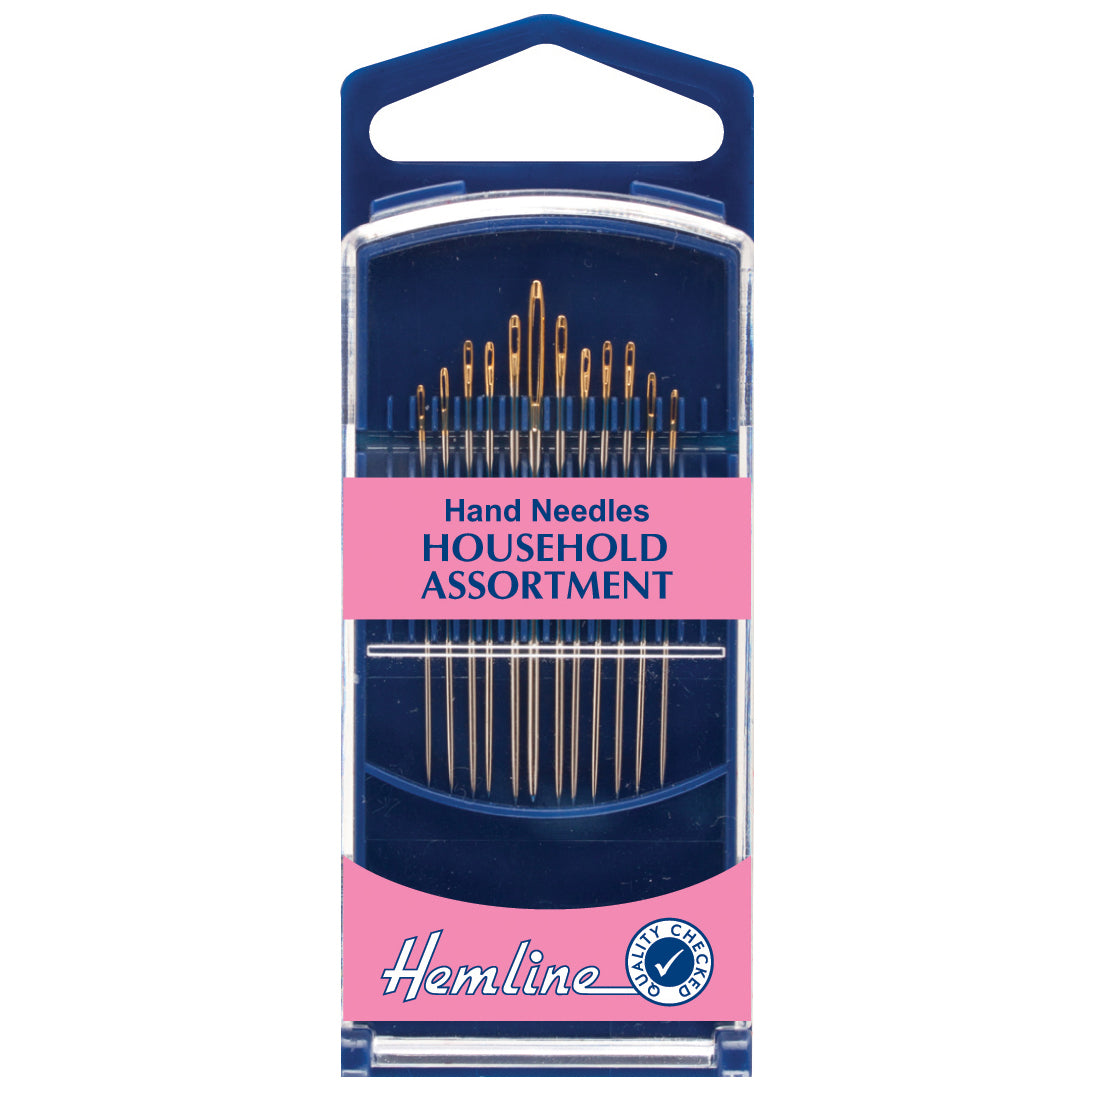 Hemline Premium Hand Needles Household